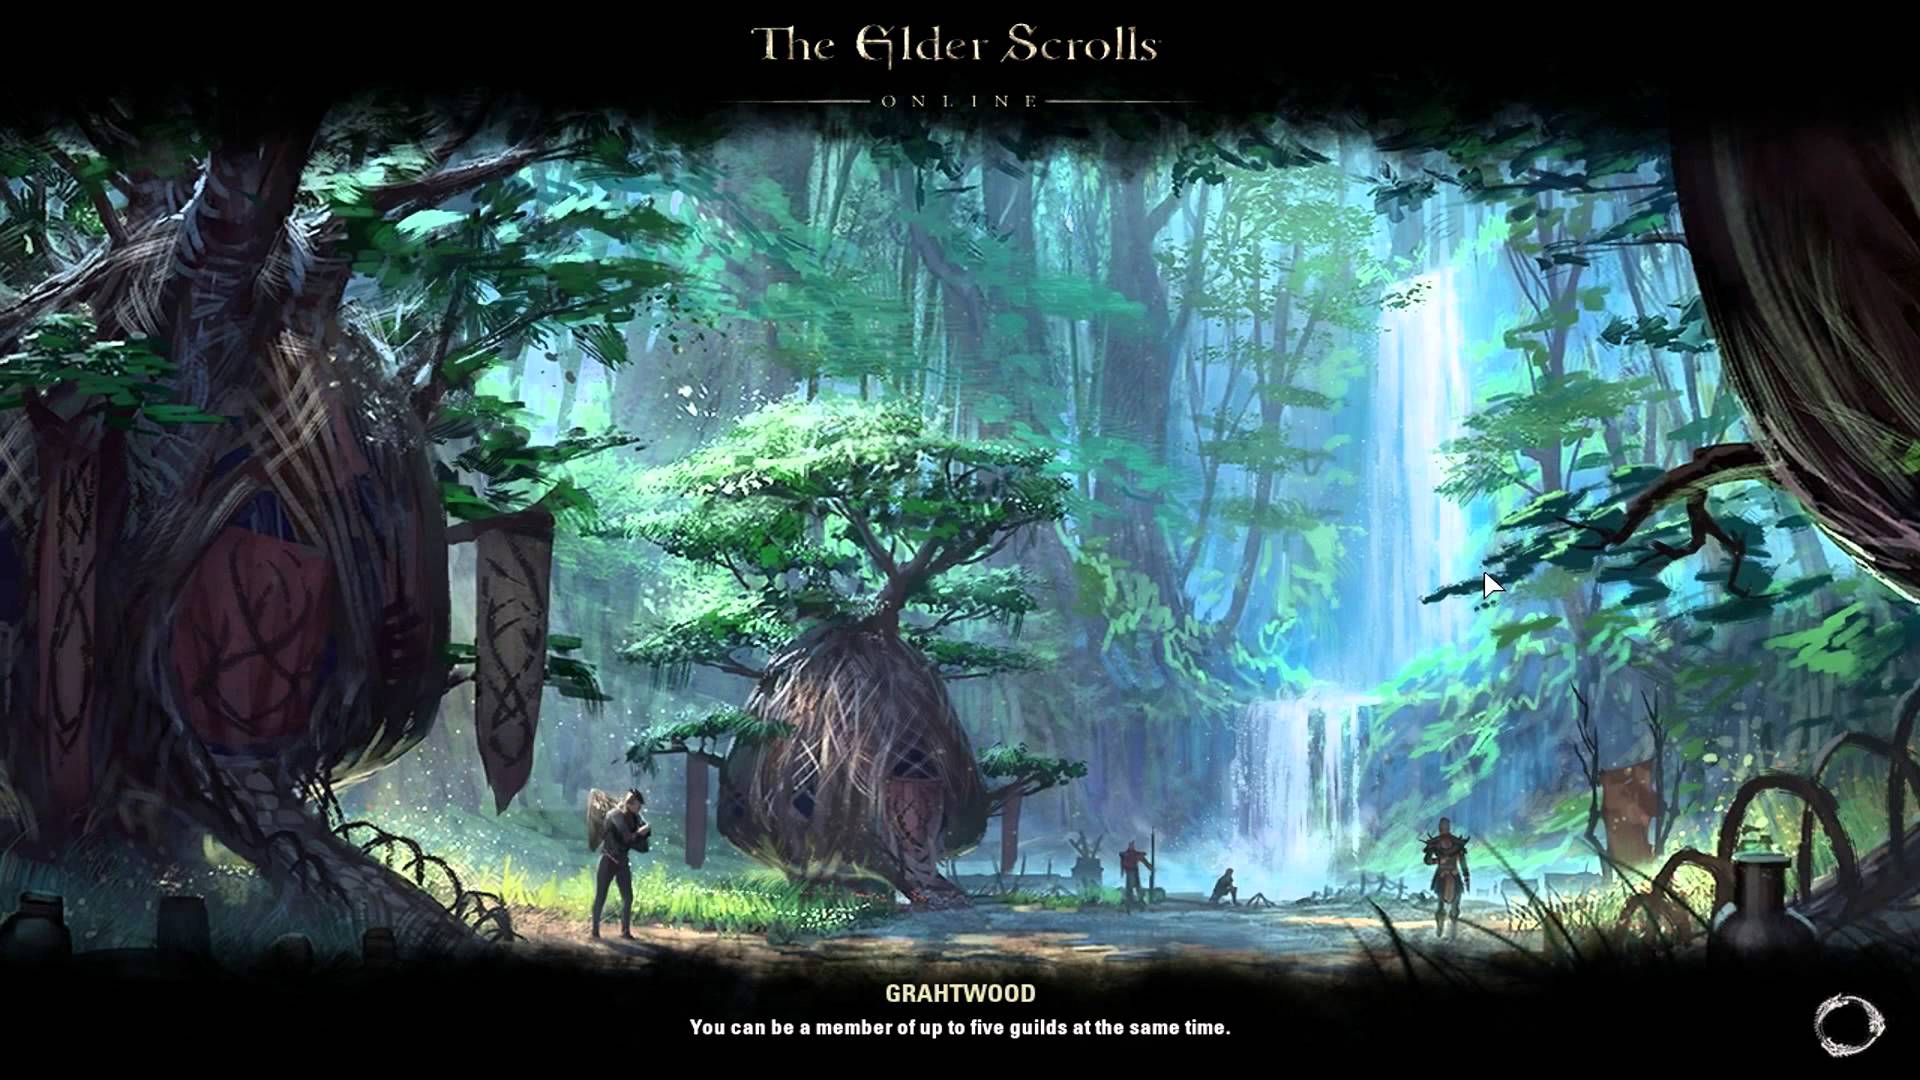 The Elder Scrolls Online Wallpapers Wallpaper Cave